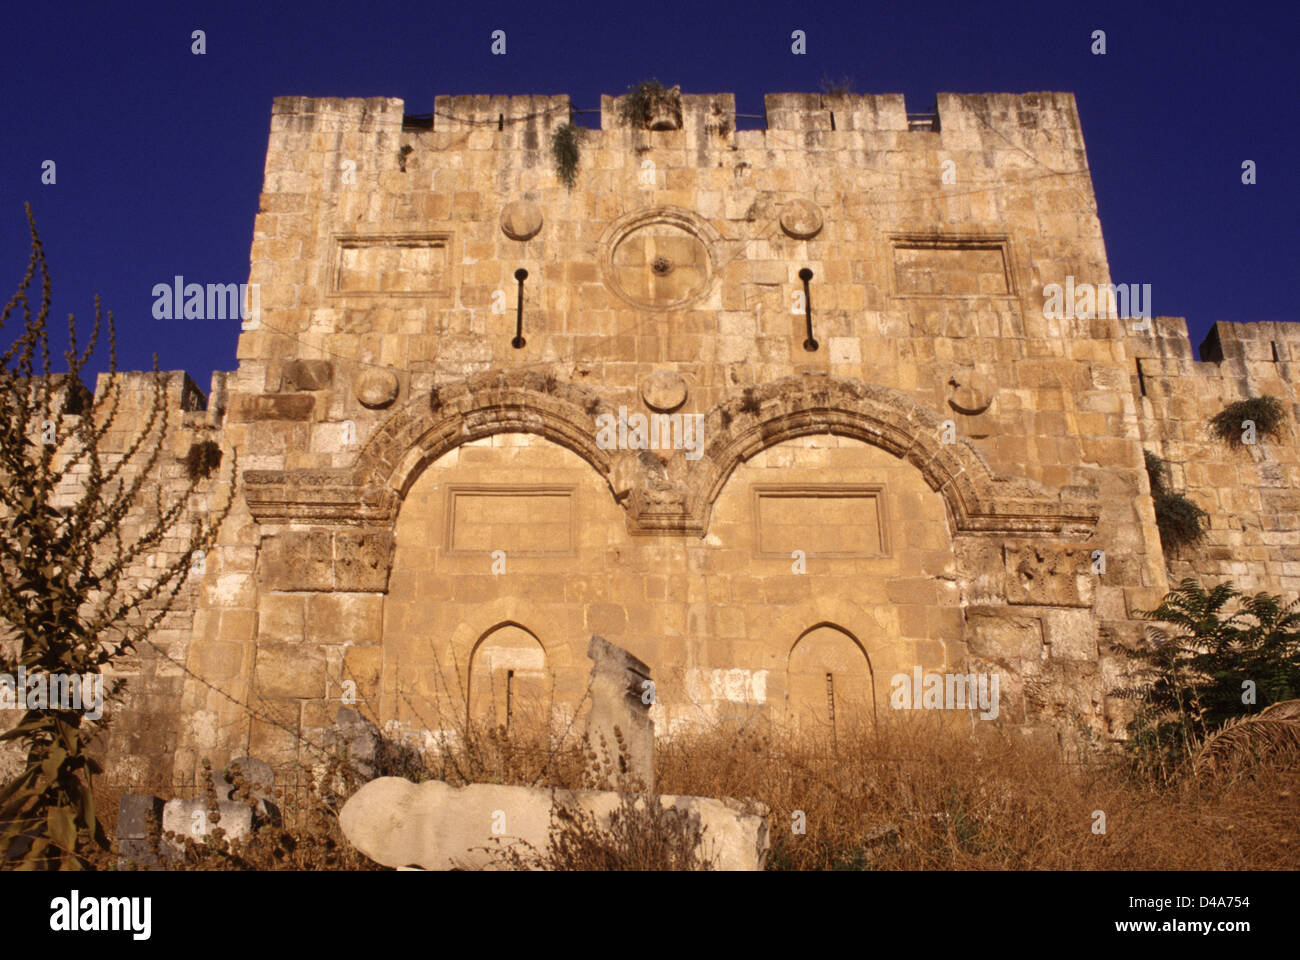 Vue sur la porte d'or voûtée scellée également porte de Mercy ou Bab  al-Dhahabi en arabe sur les murs est du mont du Temple dans la vieille  ville est Jérusalem Israël. Chacune